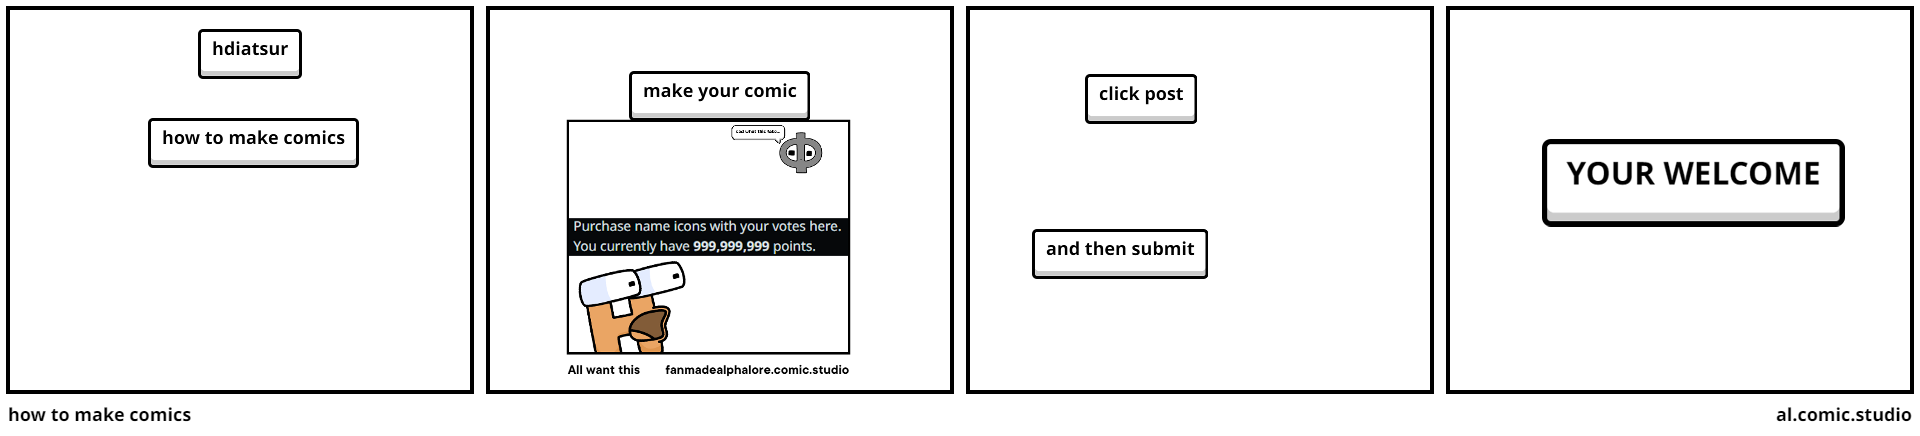 how to make comics